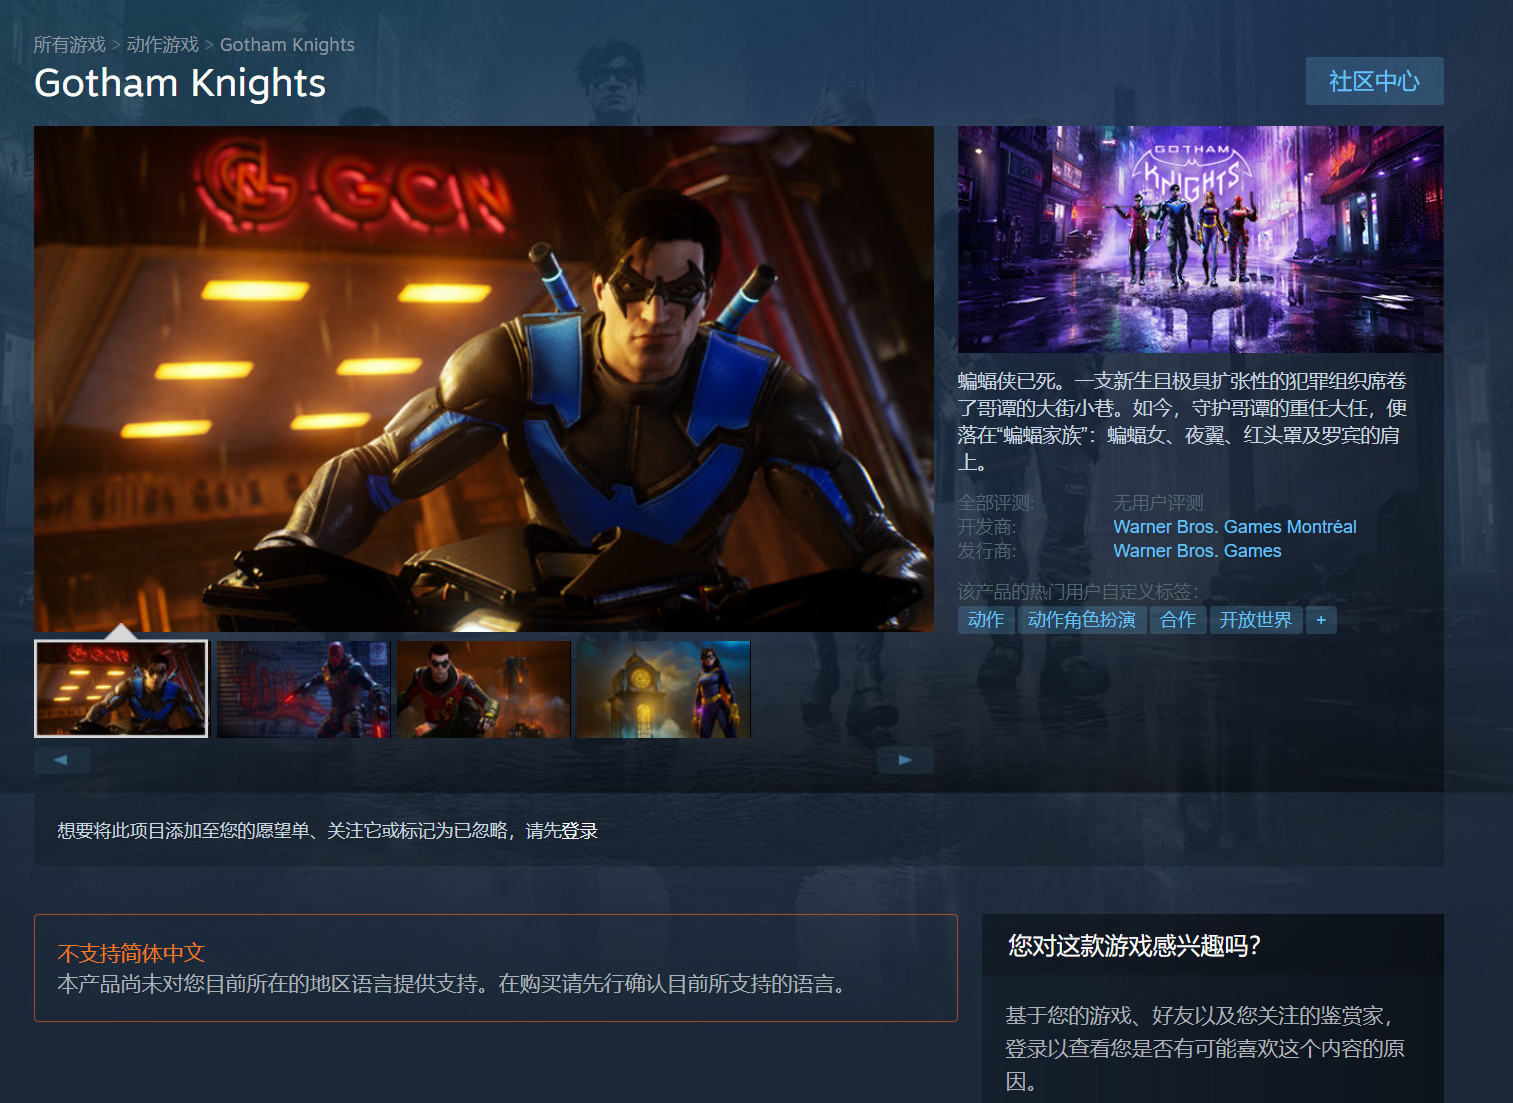 华纳《哥谭骑士》Steam页里上线 出有支持中文